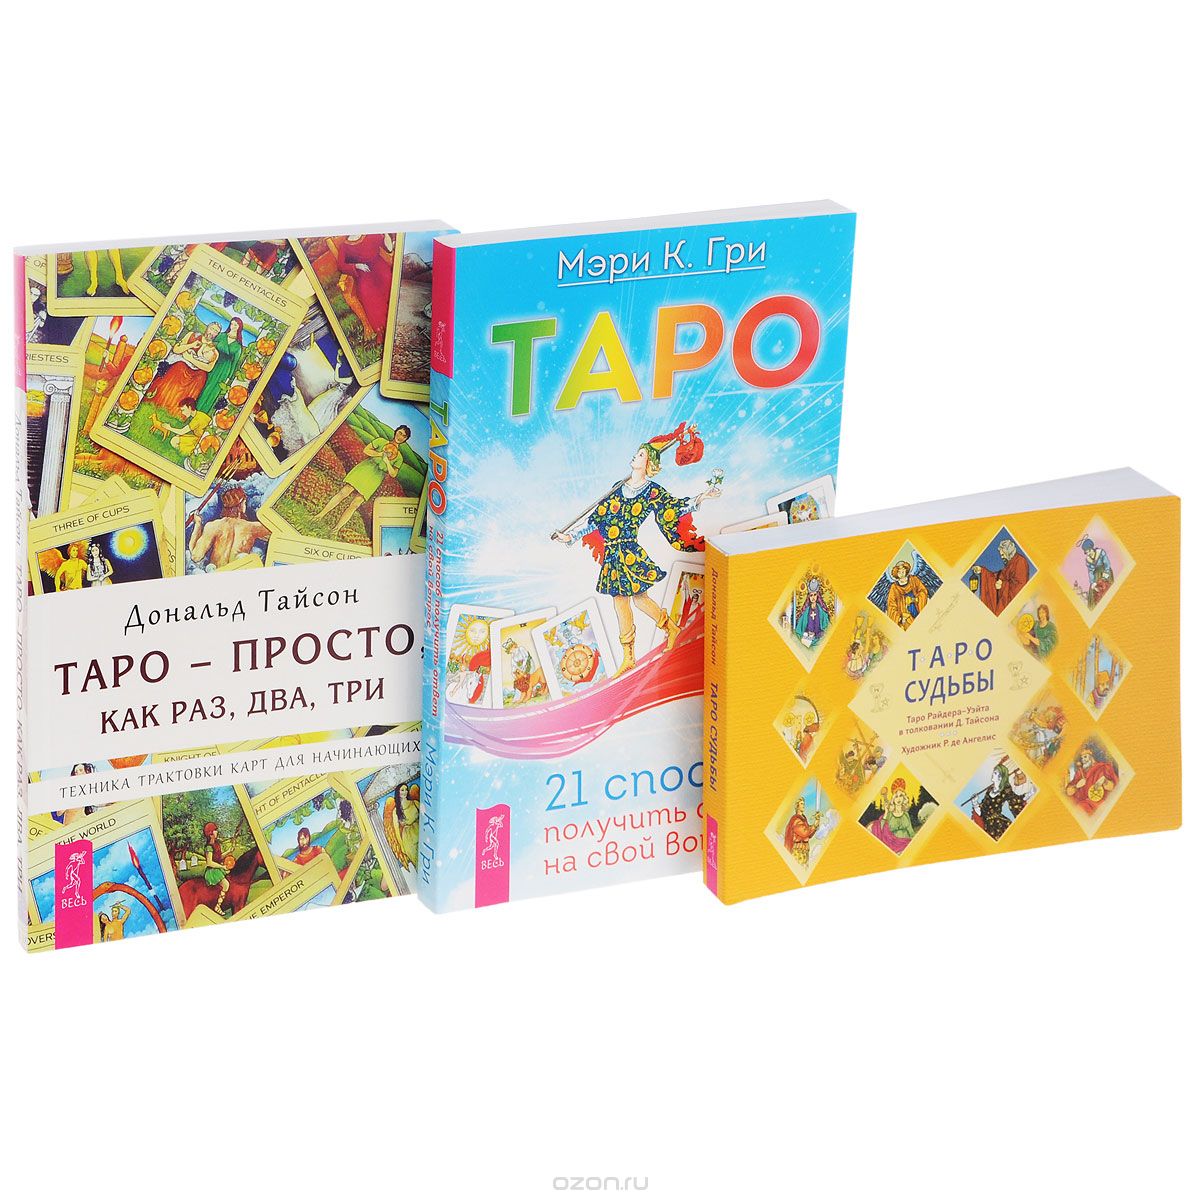 Таро - просто, как раз, два, три. Таро. Таро судьбы (комплект из 3 книг + набор из 78 карт), Дональд Тайсон, Мэри К. Гри